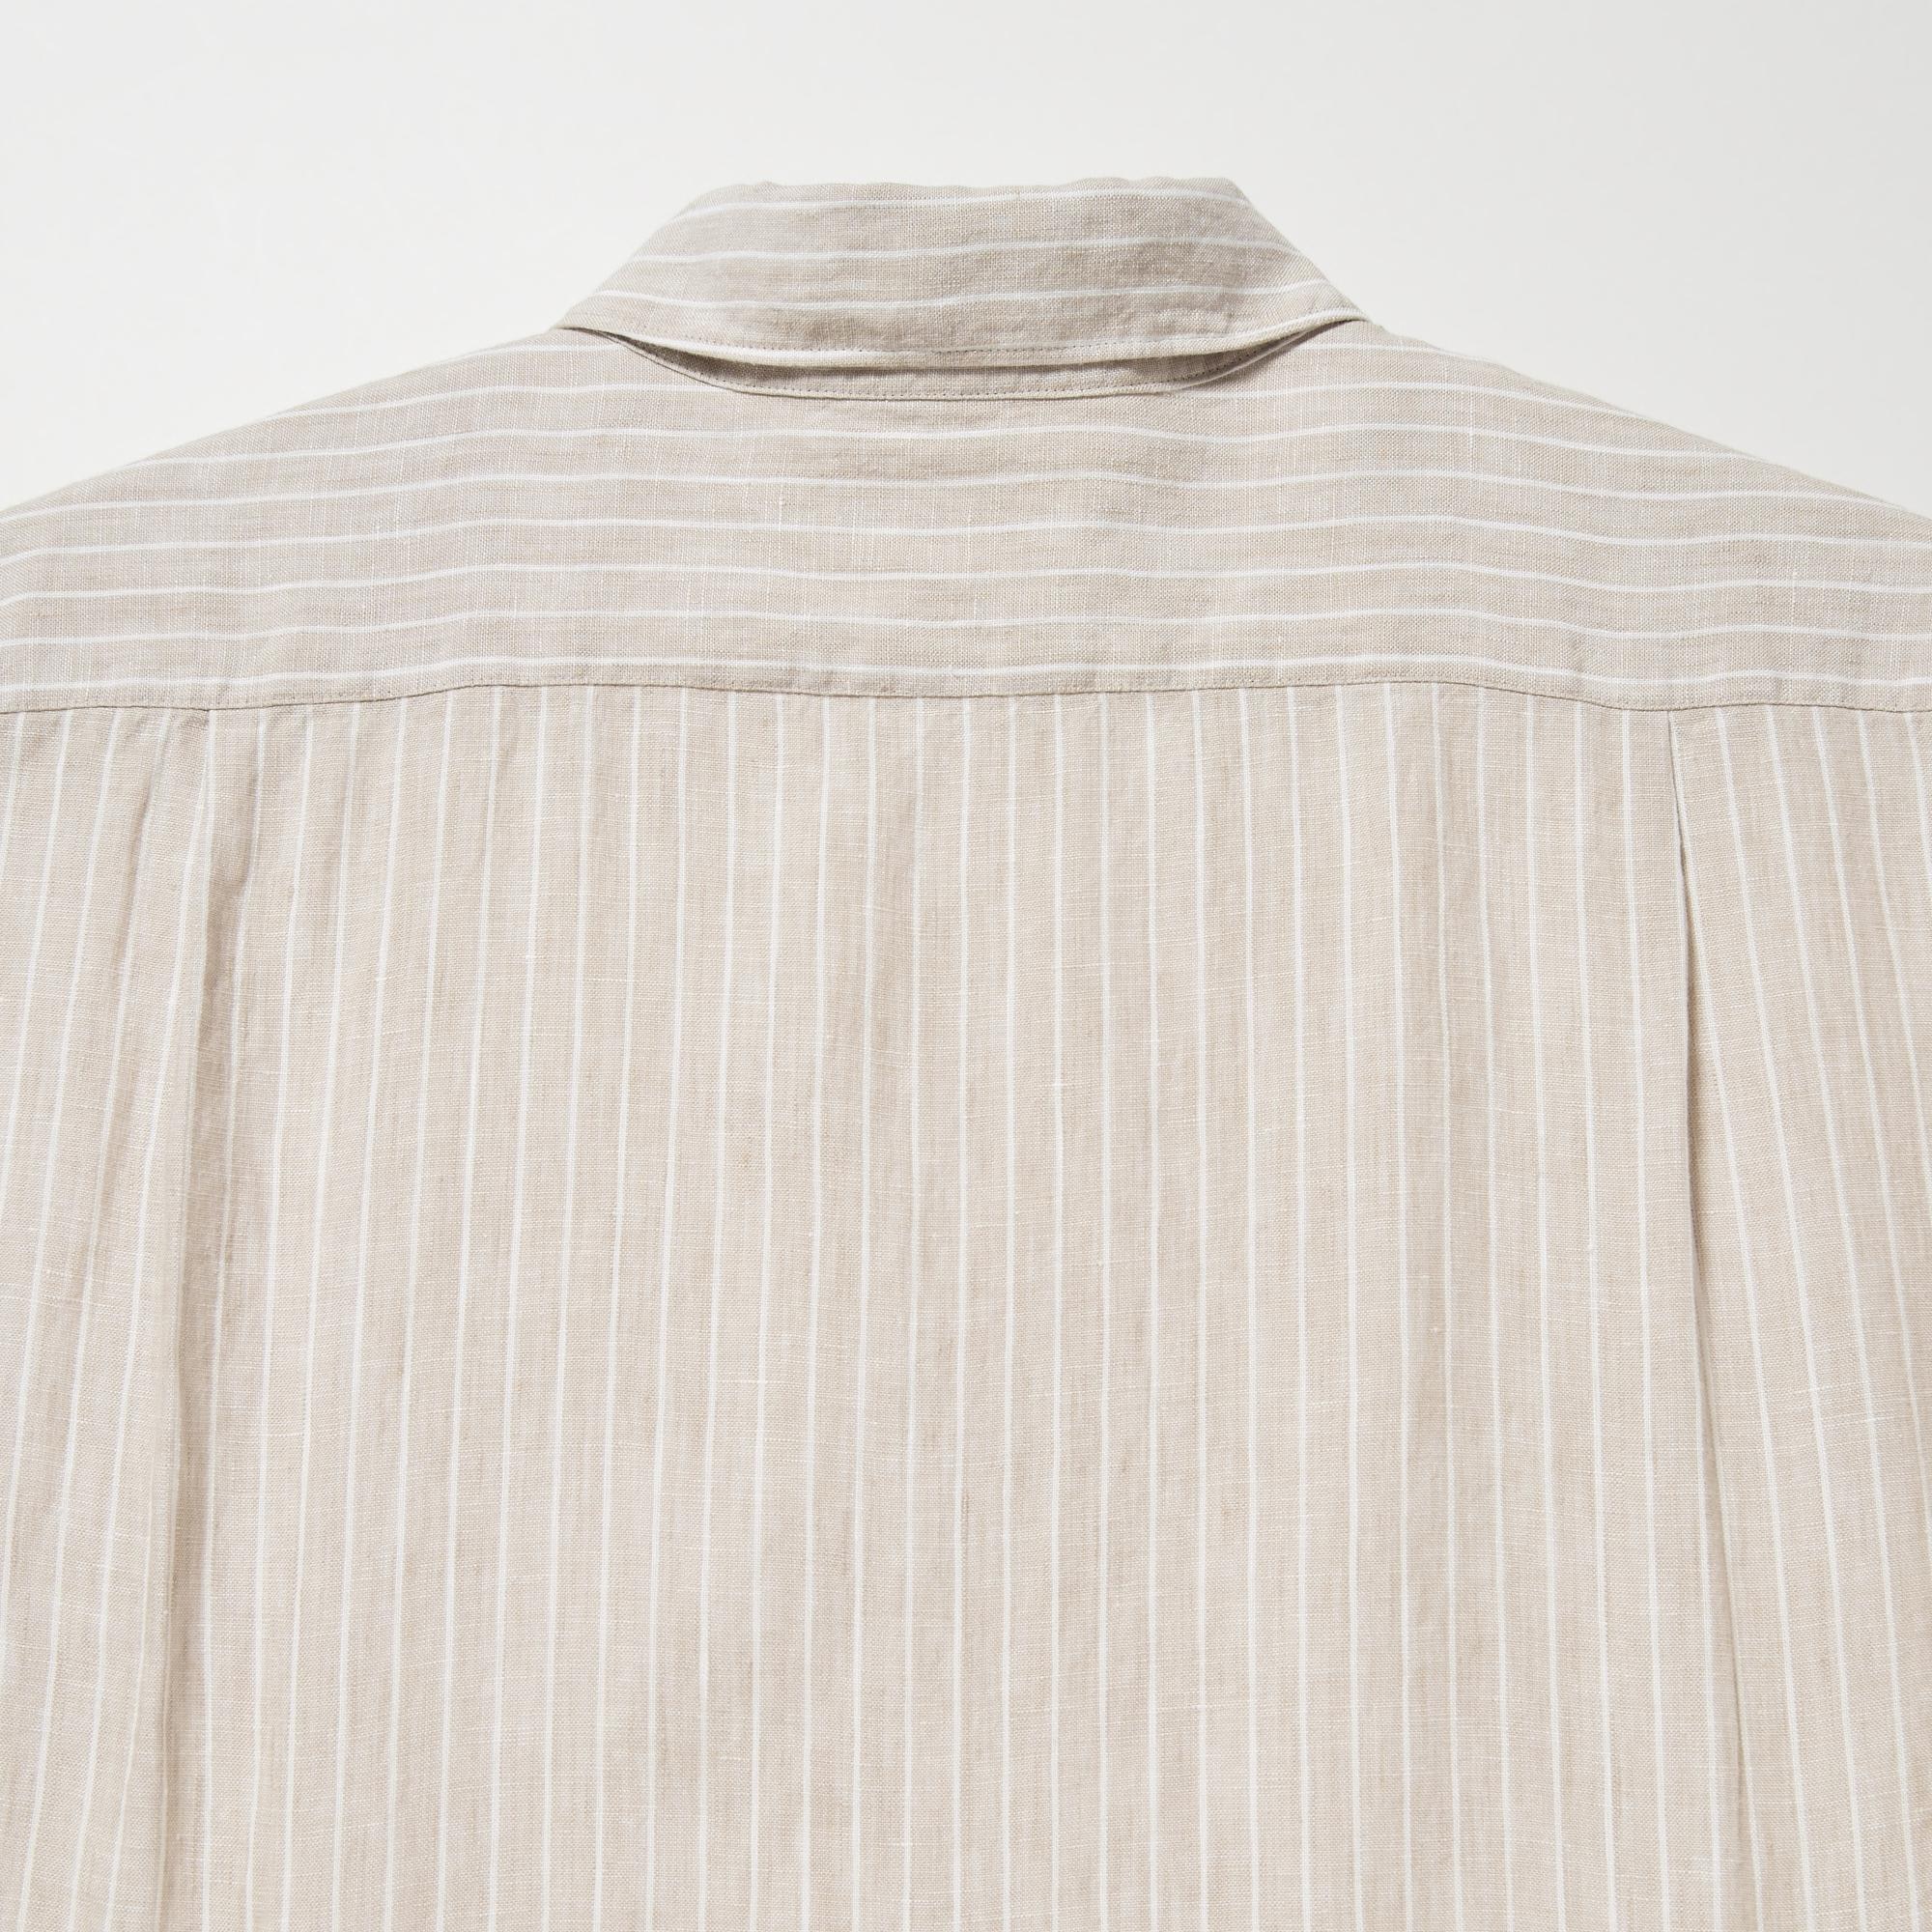 Premium Linen Striped Long-Sleeve Shirt